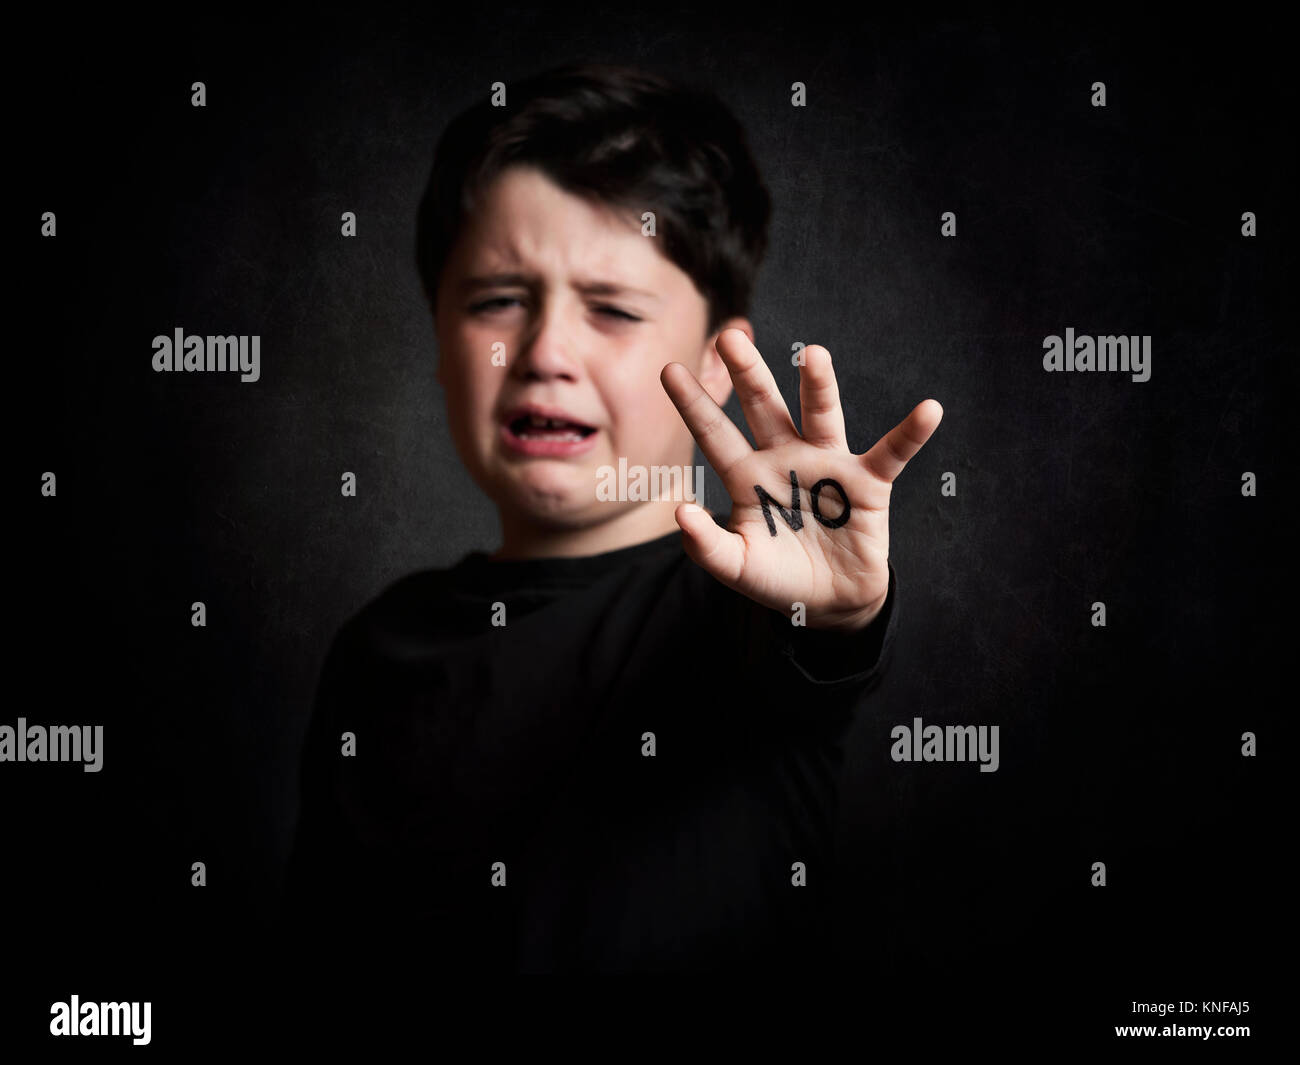 abused child,crying boy Stock Photo